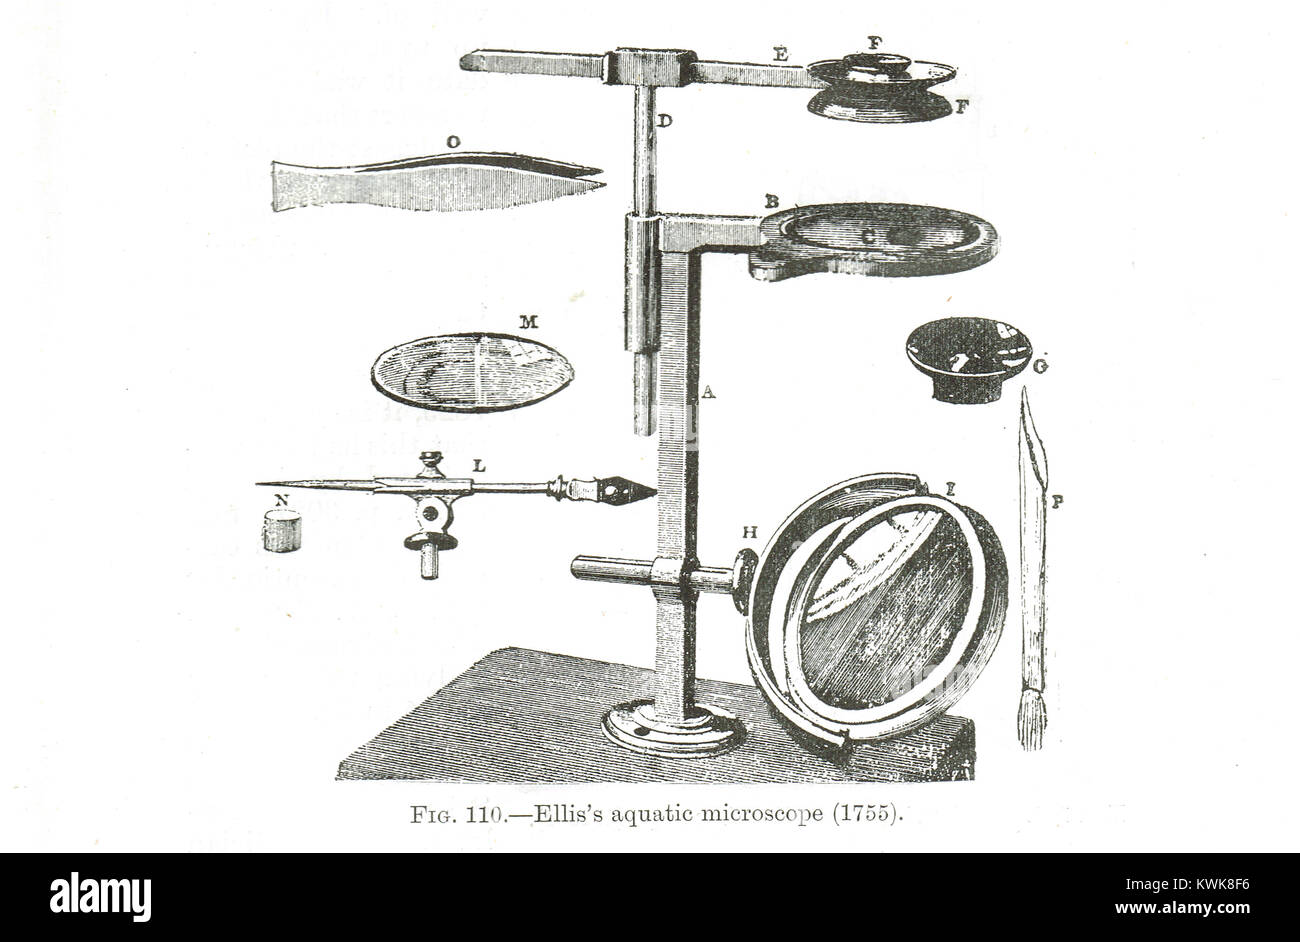 John Ellis's Aquatic Microscope, 1755 Stock Photo